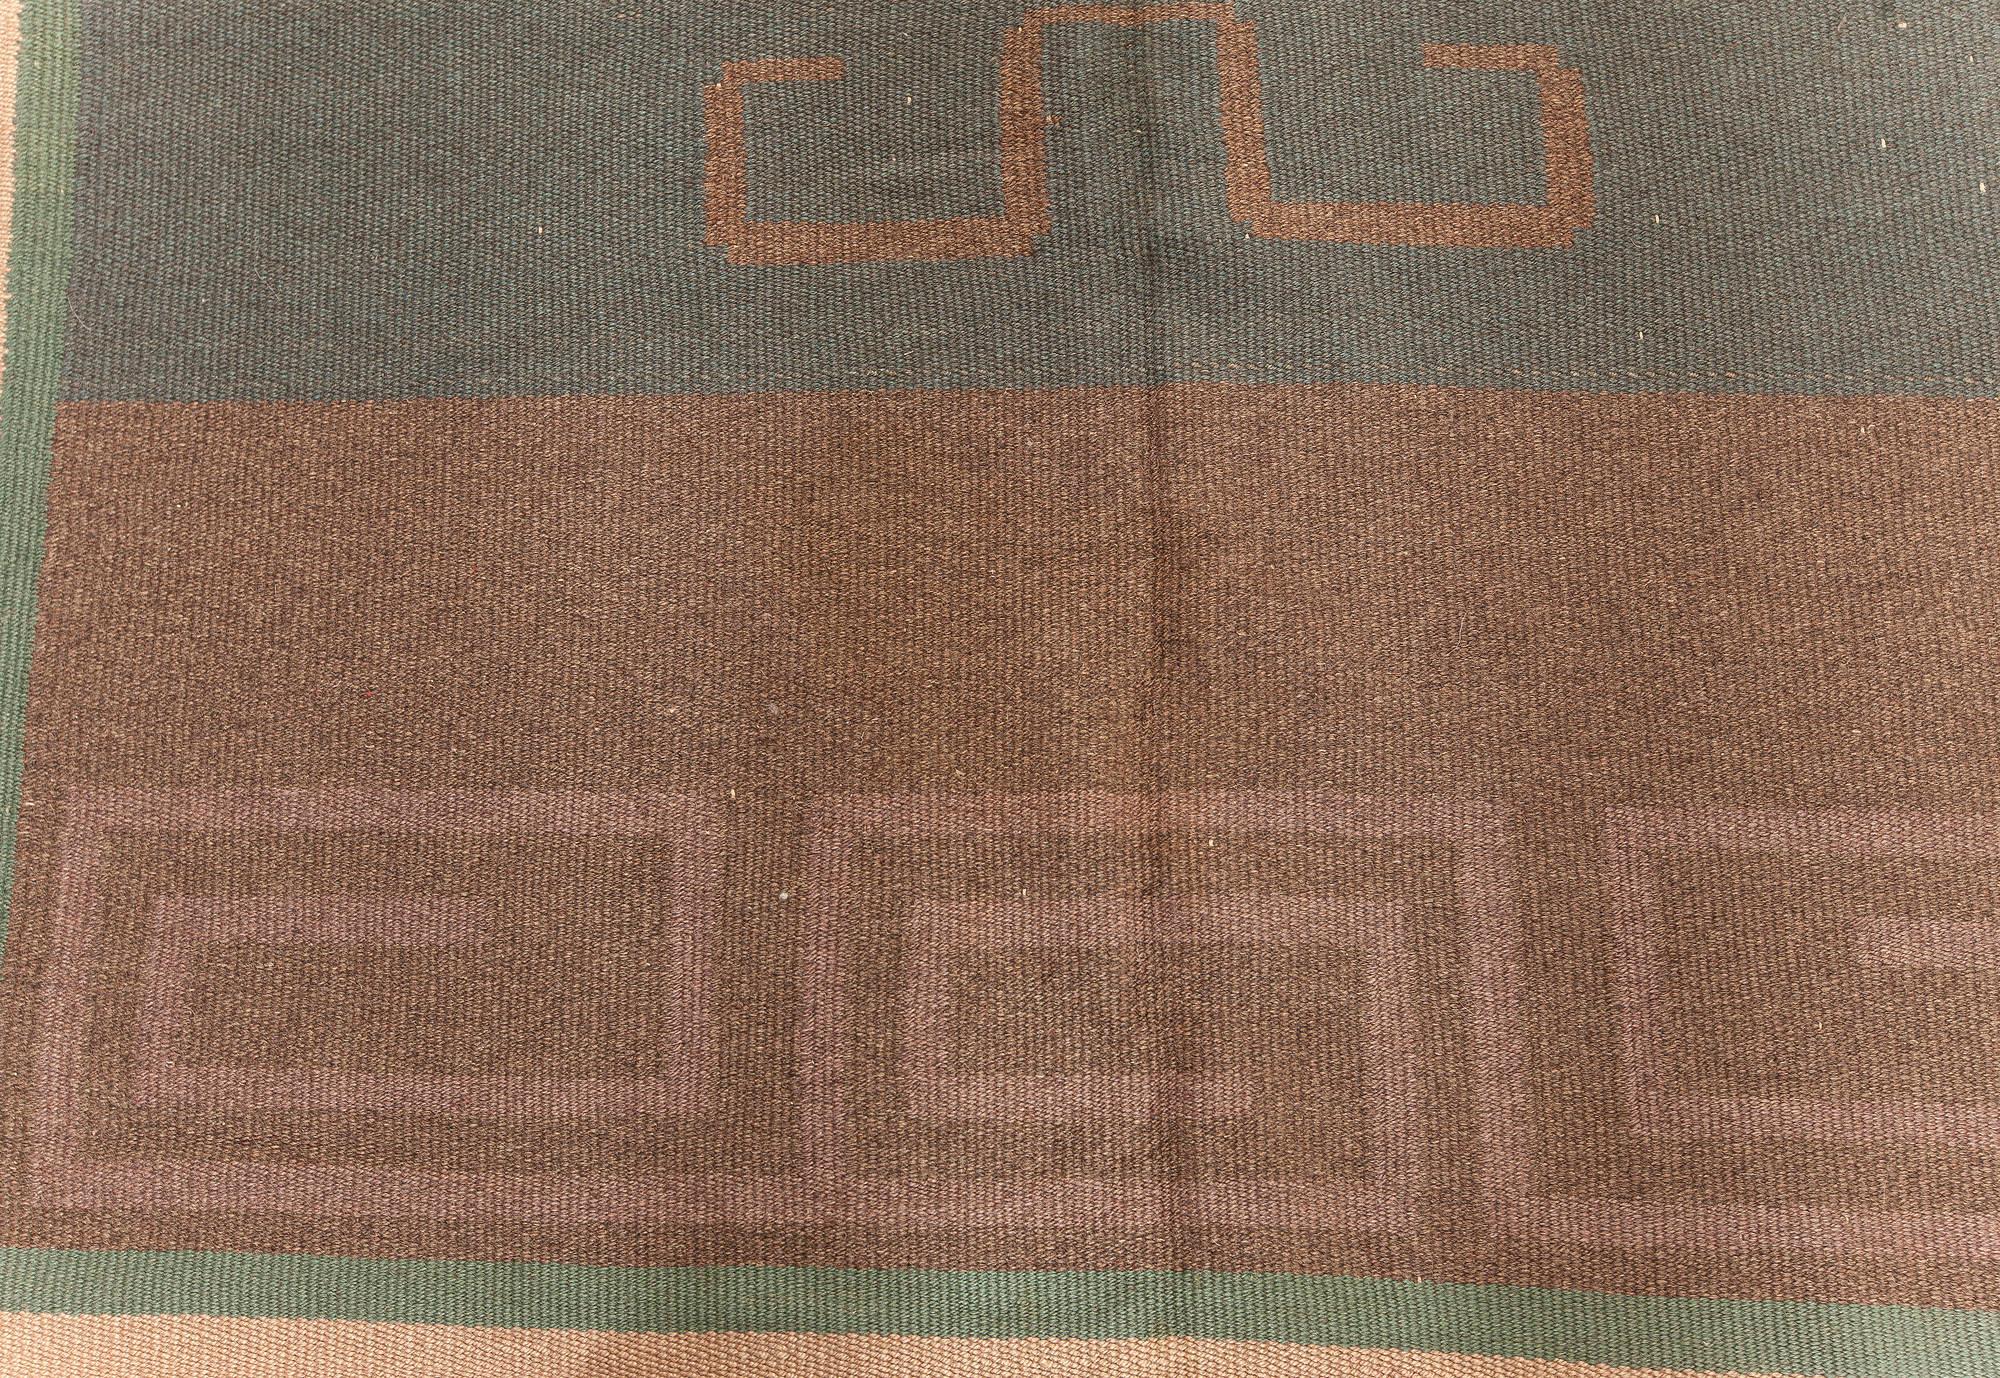 Skandinavischer Flachgewebeteppich aus Wolle im Vintage-Stil. Eingewebte Initialen und Datum am Rand 'IO 1928'.
Größe: 7'9